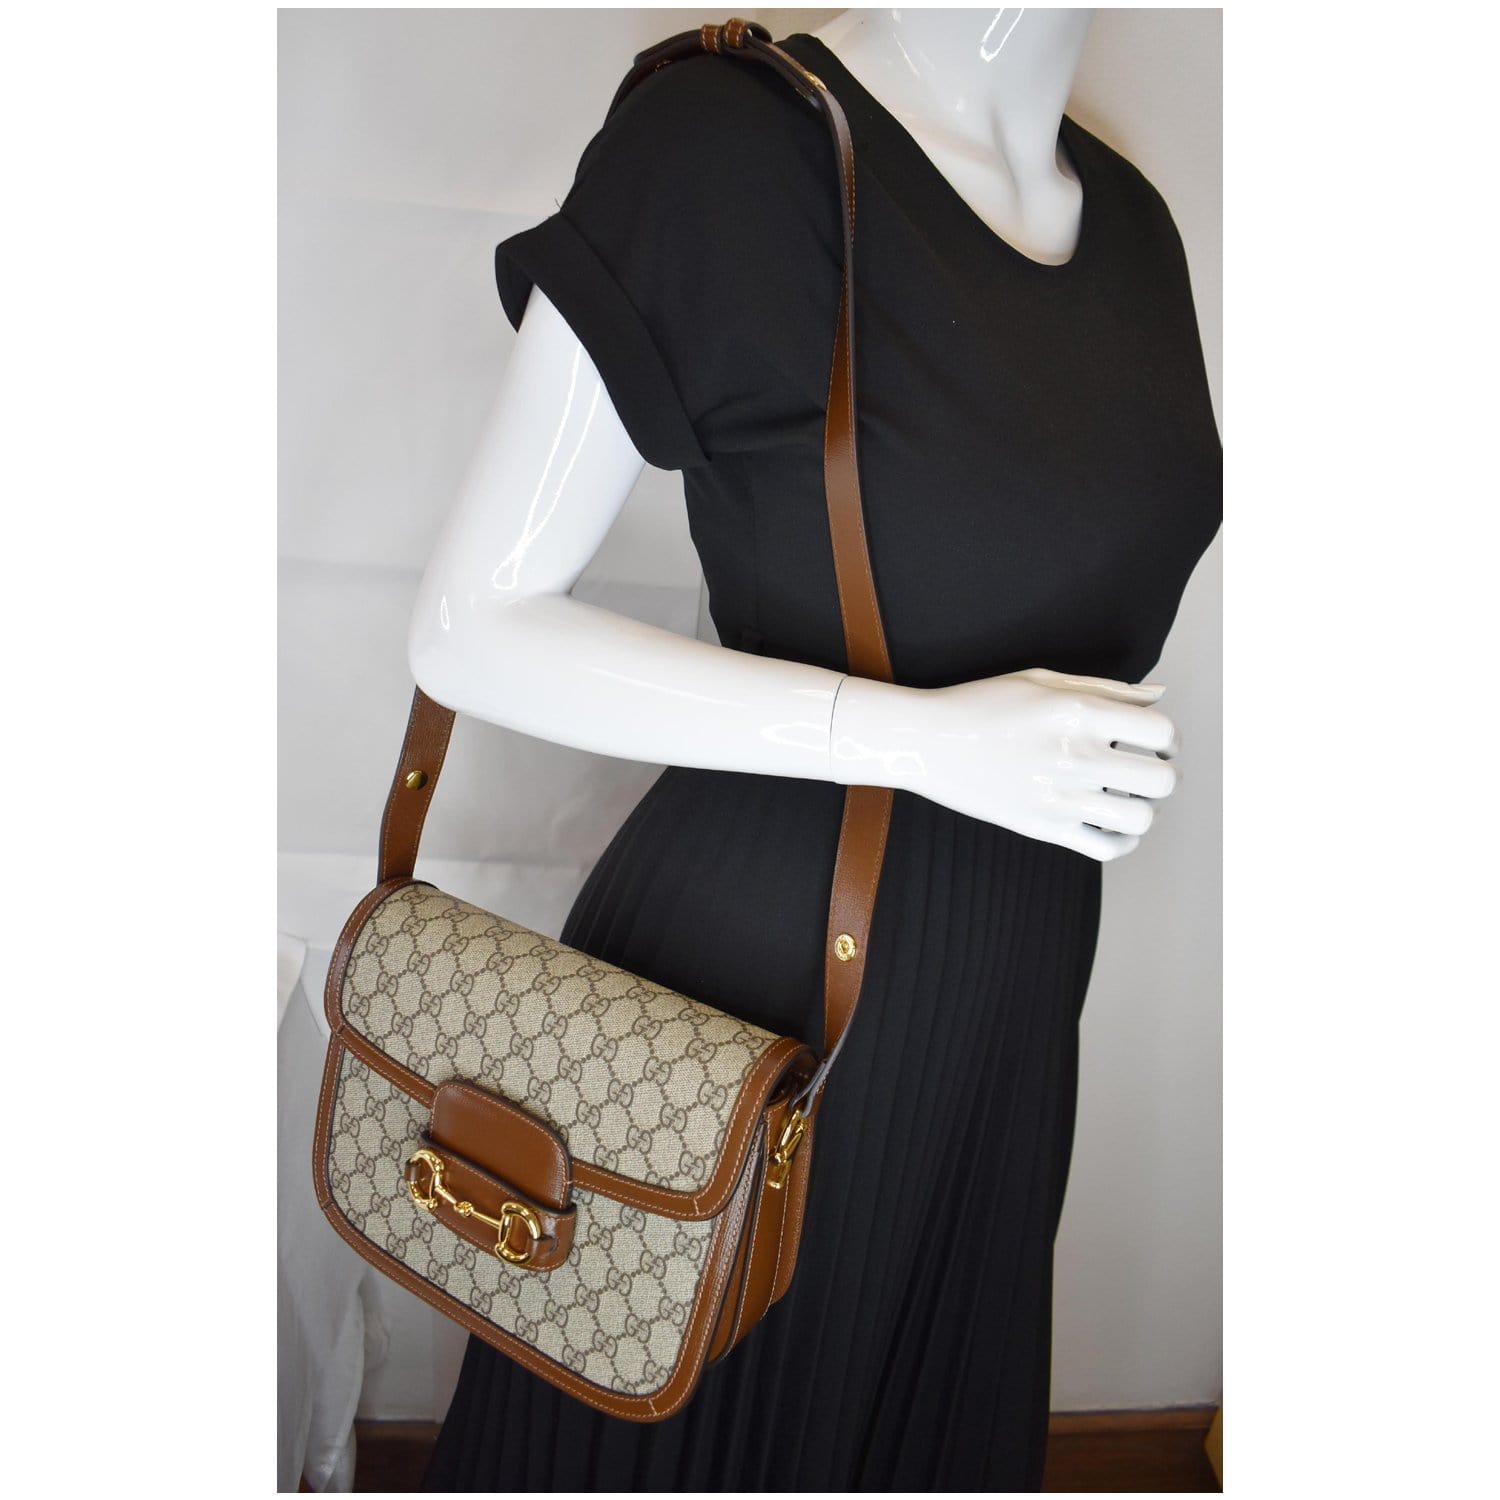 Gucci Horsebit 1955 small shoulder bag in beige and ebony